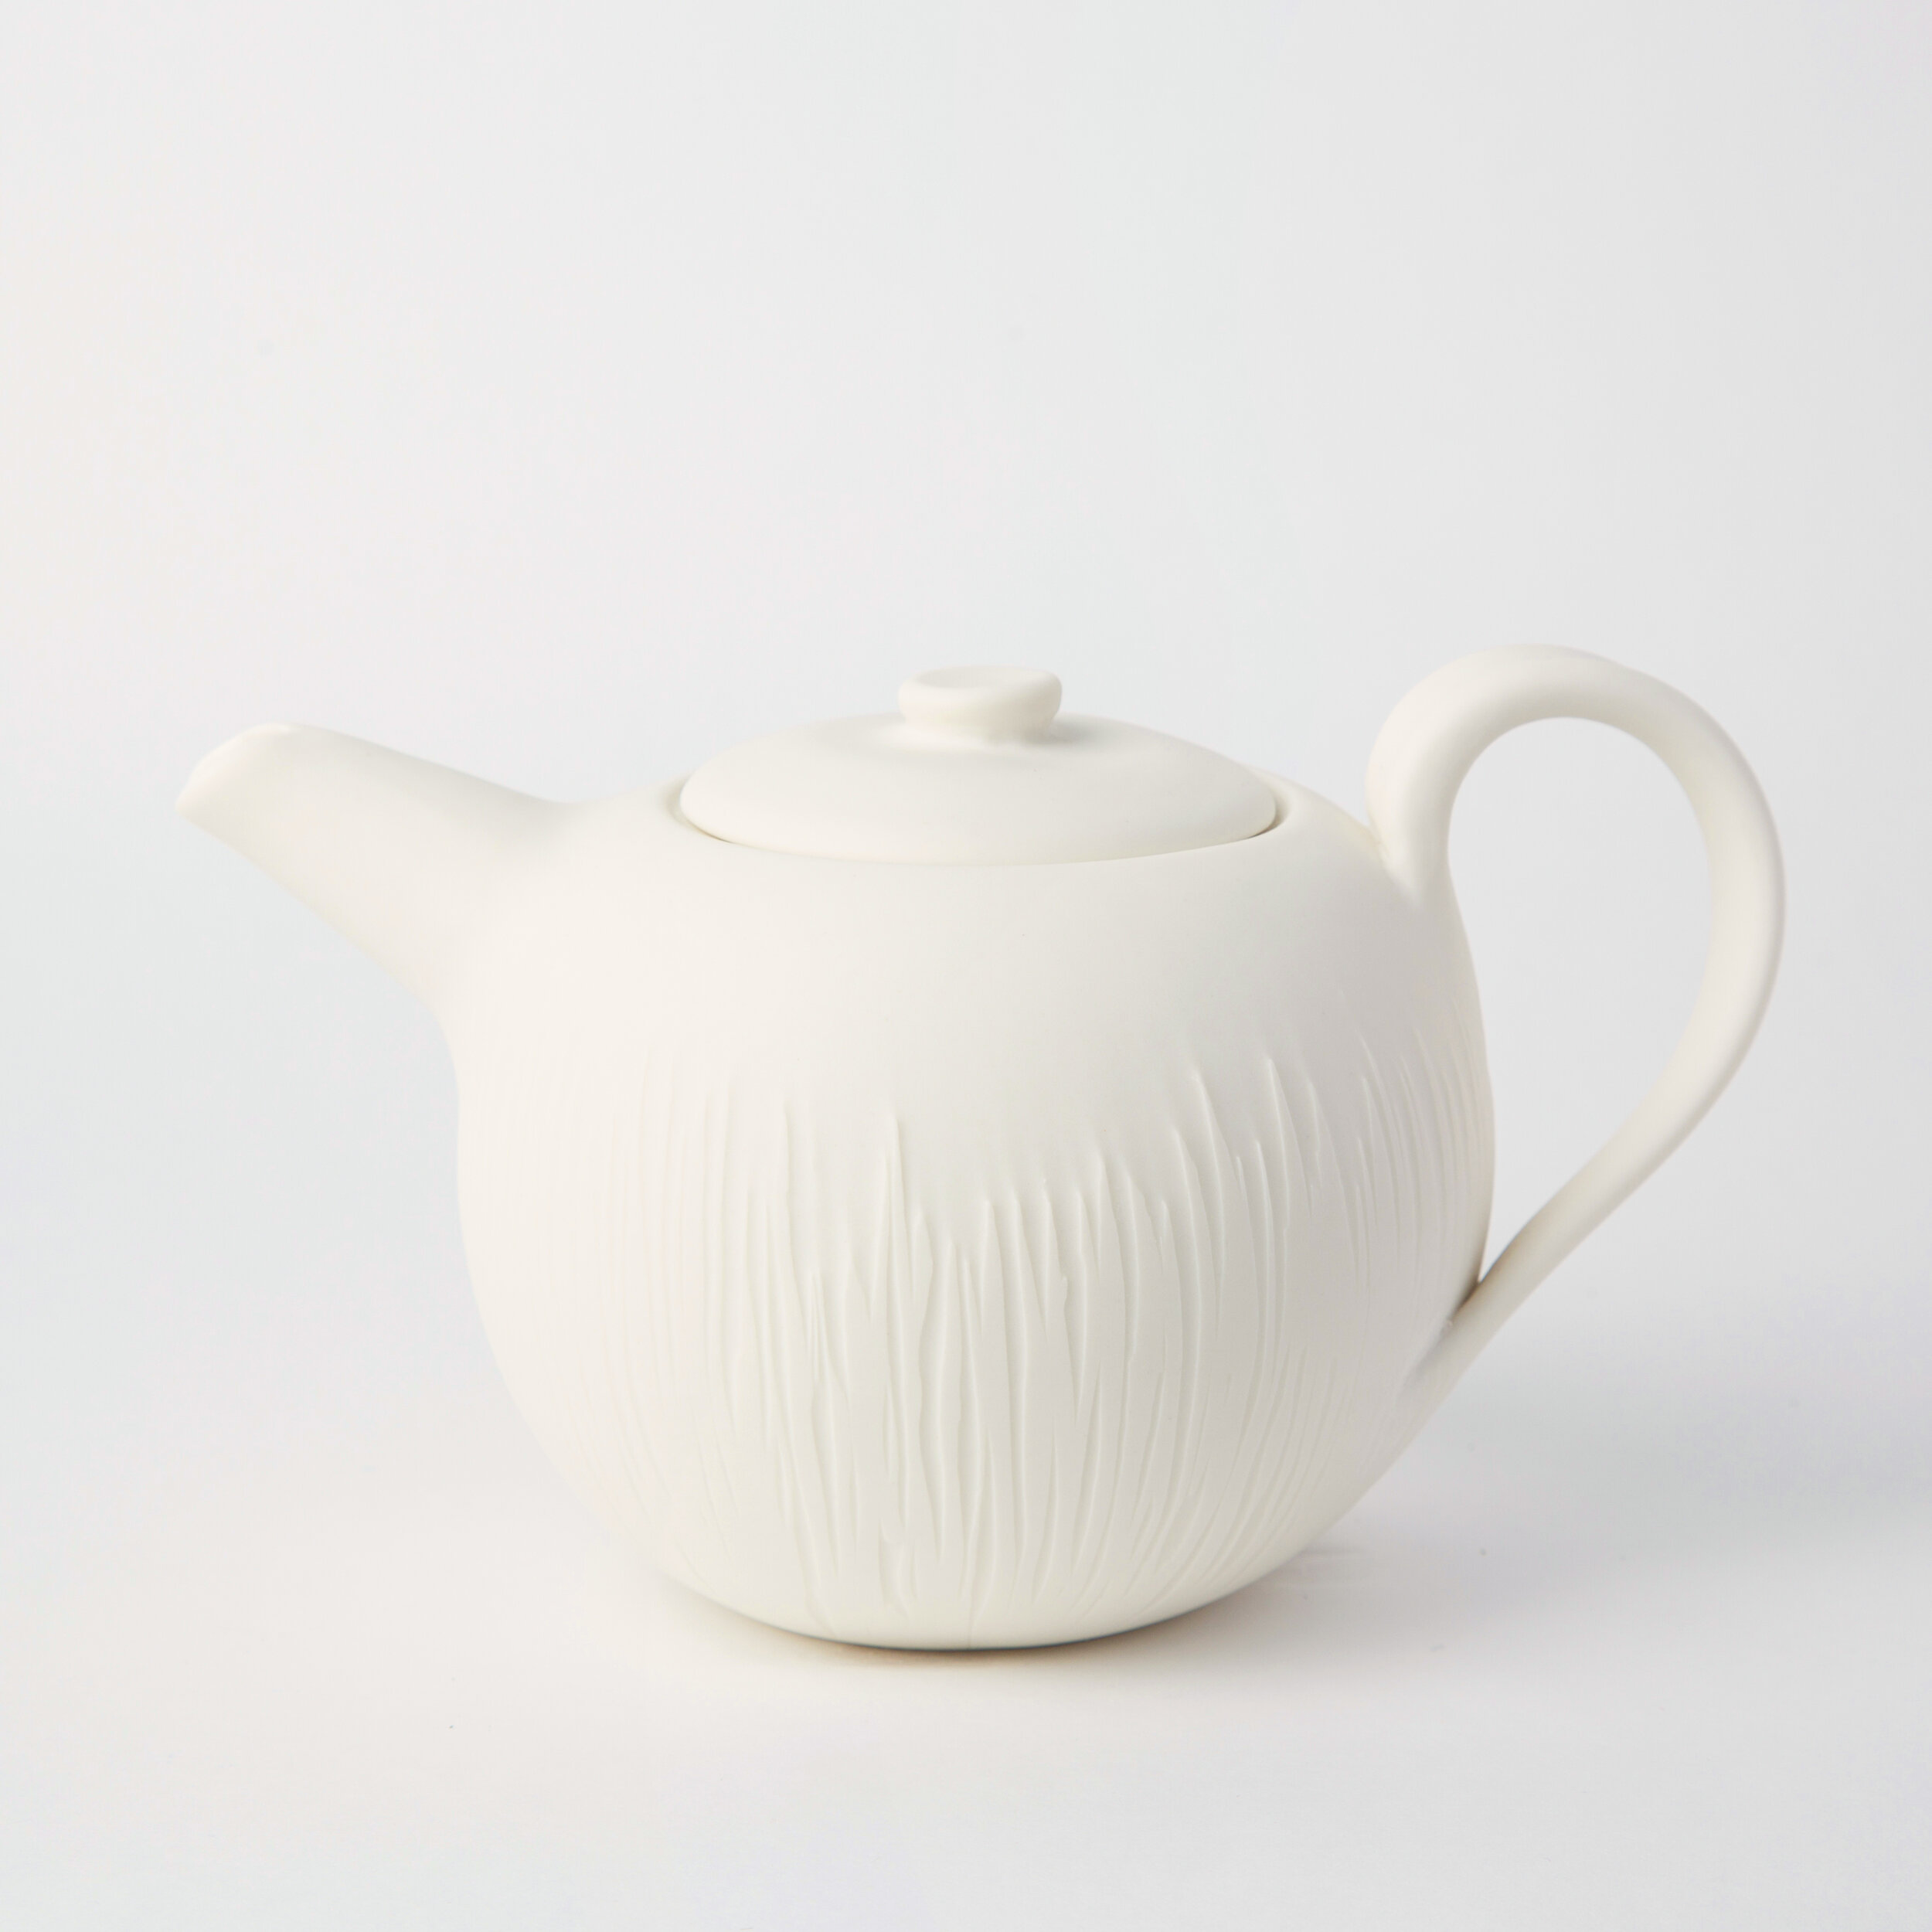 Mariage Frères Porcelain Teapot